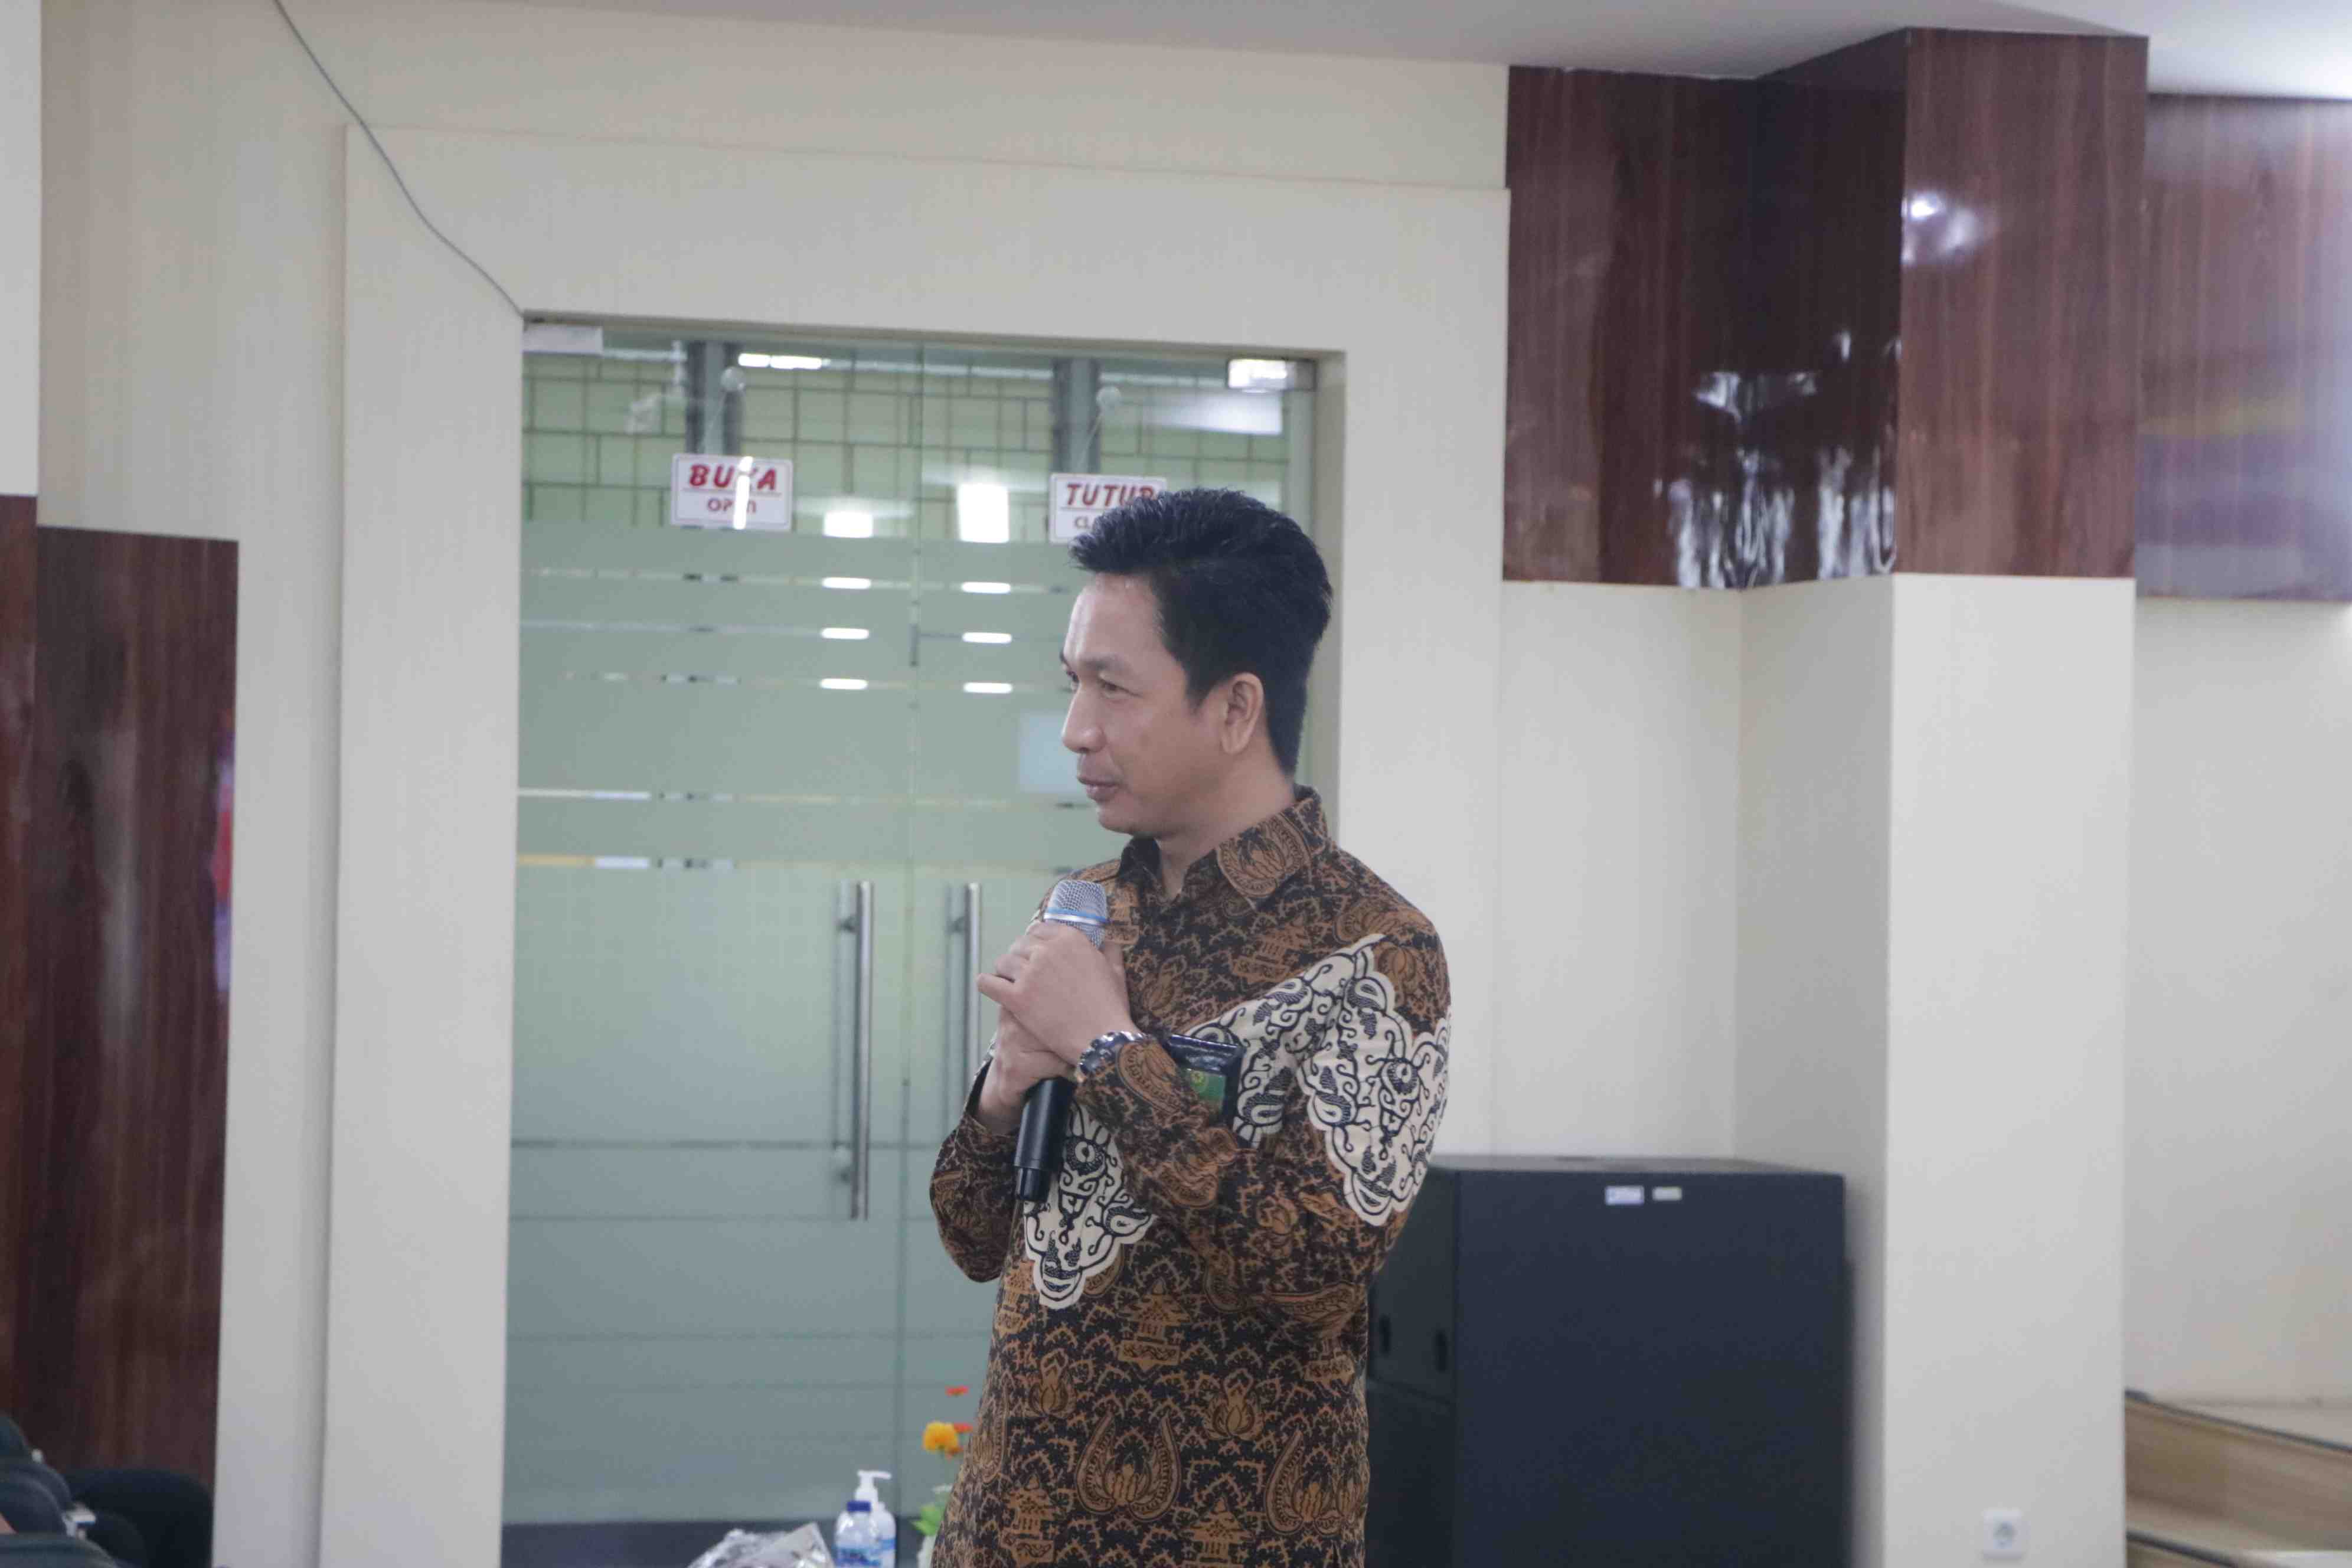 Mahkamah Agung RI, Badan Urusan Administrasi melaksanakan kunjungan ke Fakultas Hukum Universitas Pembangunan Nasional Veteran Jakarta dengan agenda SOBIMA (Sosialiasi Kebijakan Mahkamah Agung).